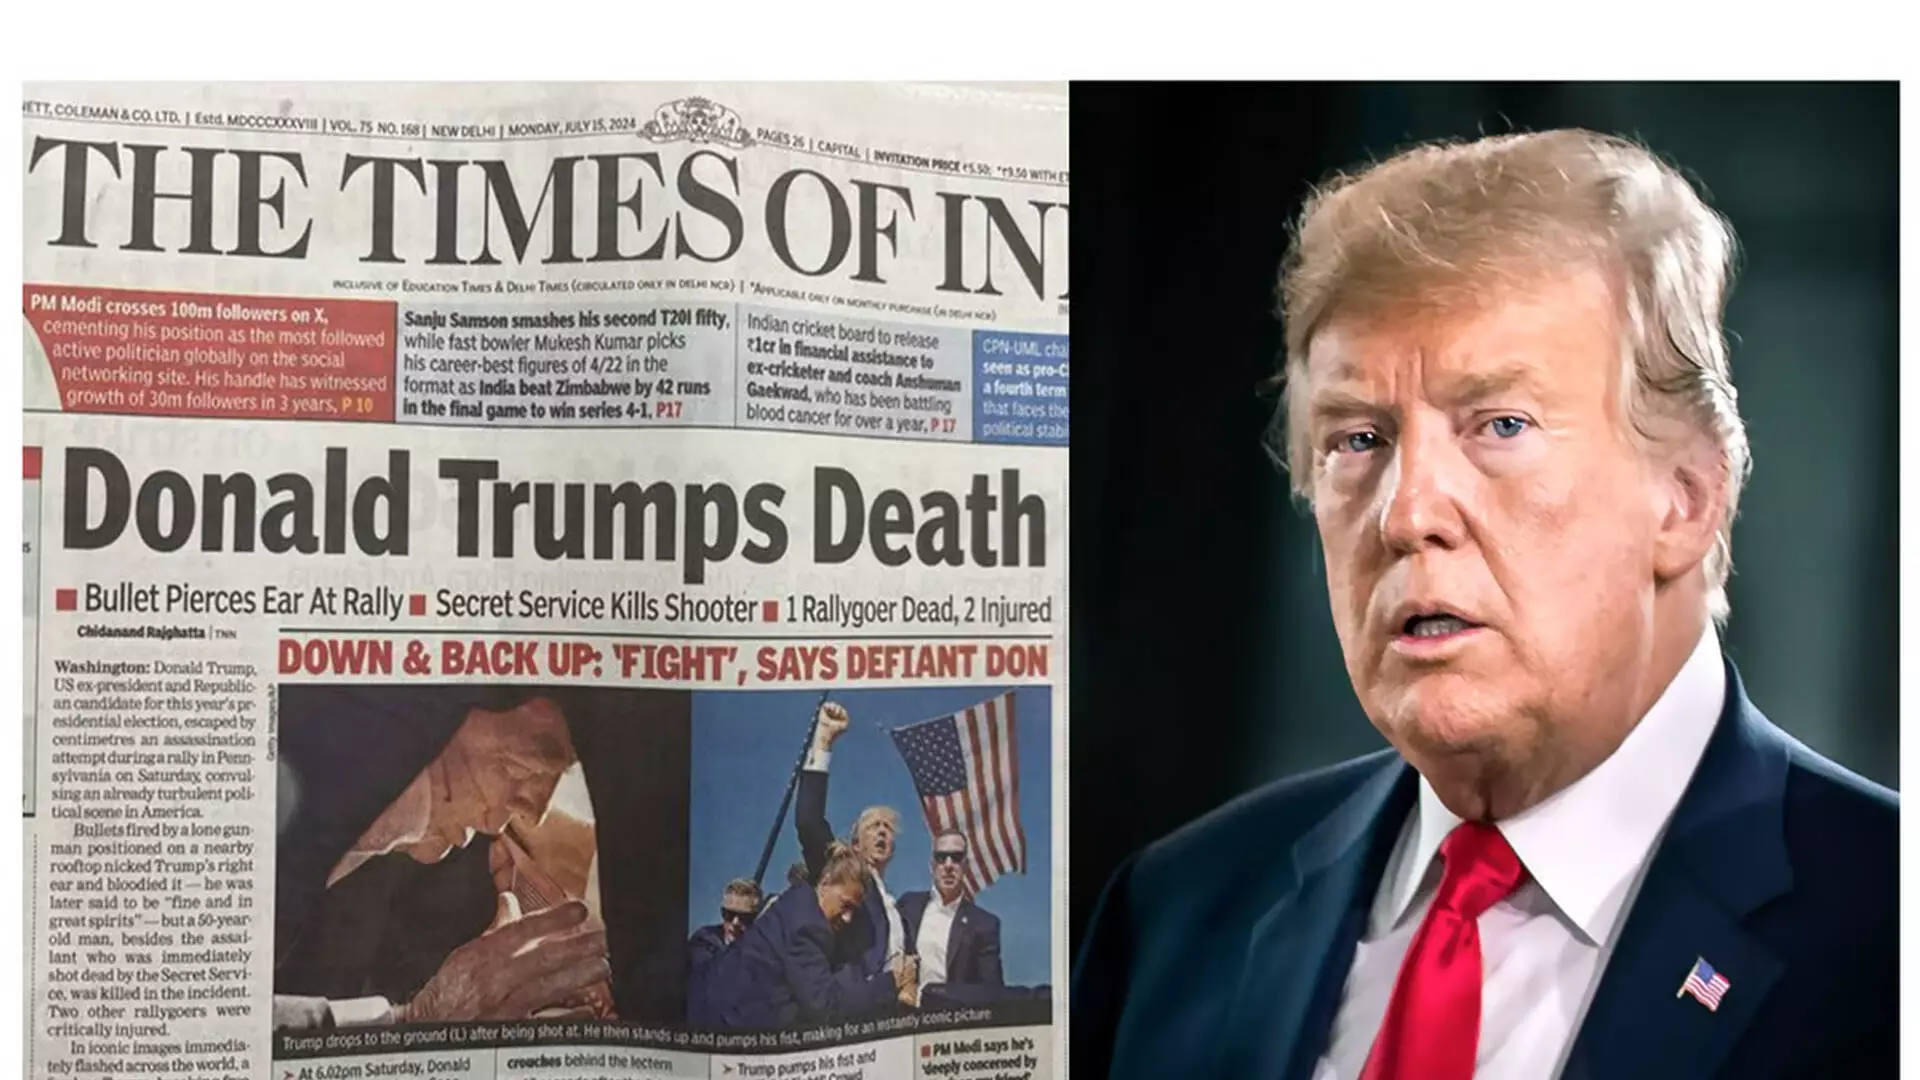 Donald Trumps Death, जाने टाइम्स ऑफ इंडिया के शीर्षक की सच्चाई